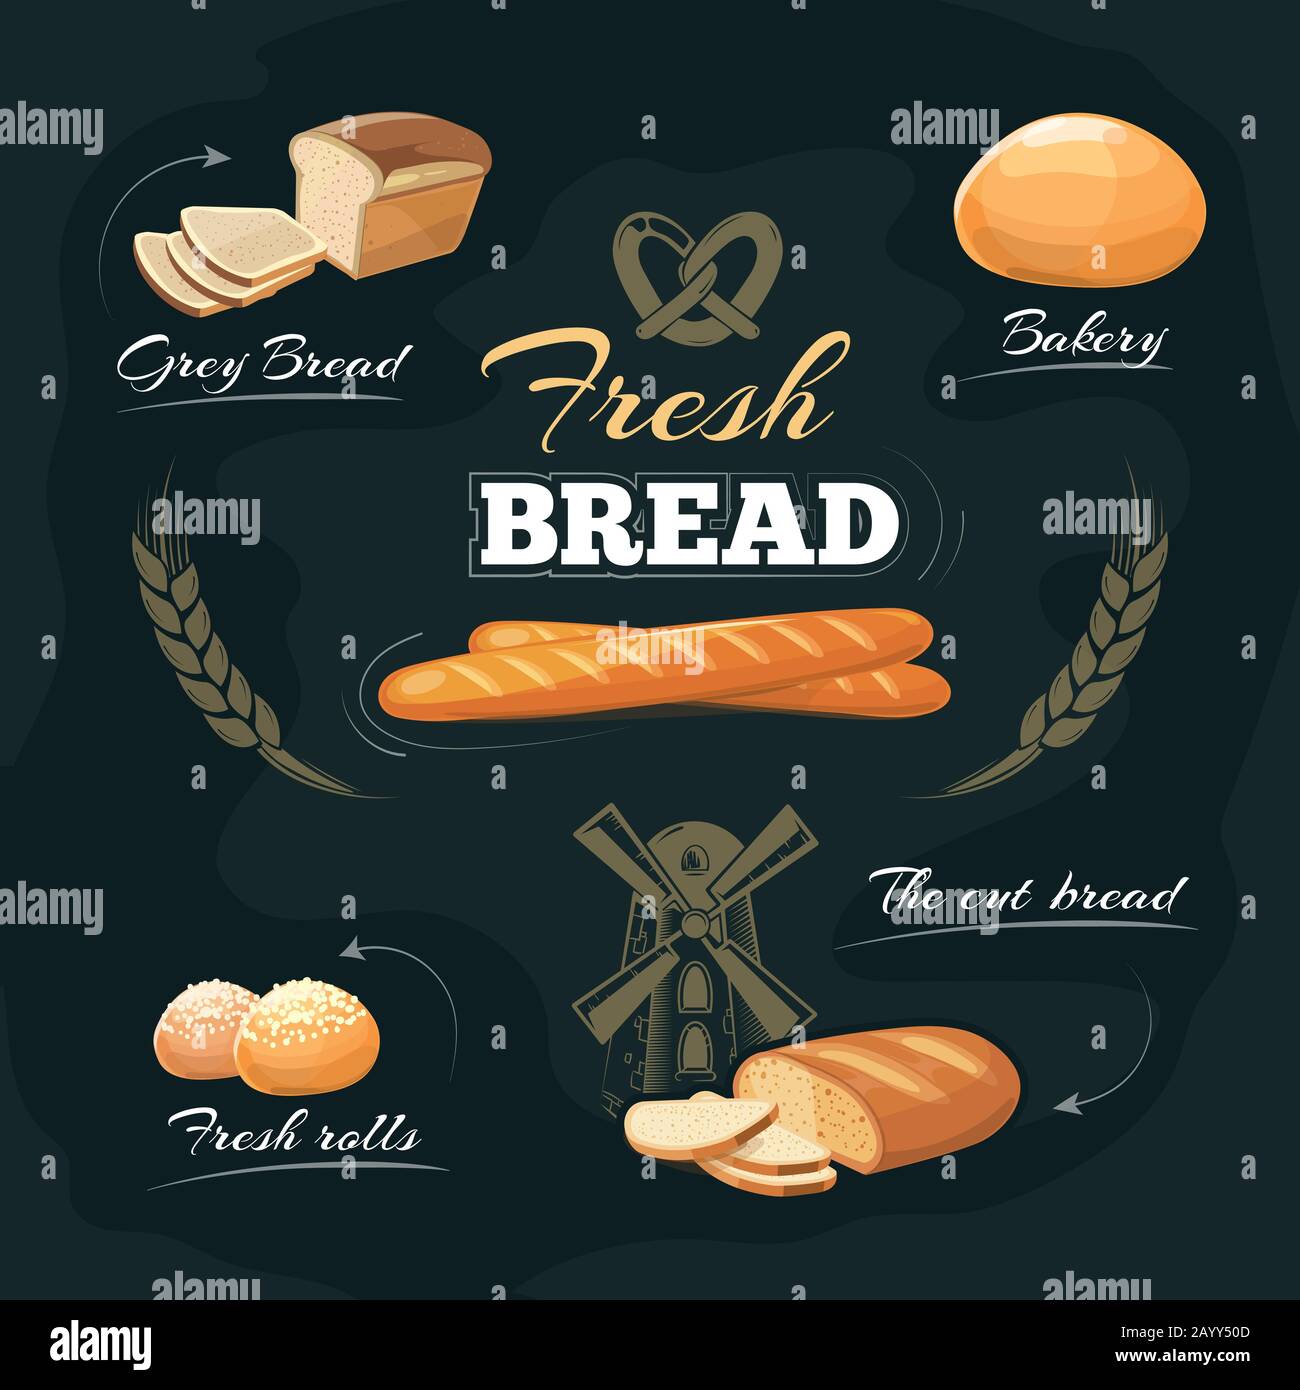 Café-Speisekarte für Backwaren. Brot oder Baguette zeichnen, Etikett und Emblem für Backwaren mit Brot. Vorlage für Vektorgrafiken Stock Vektor